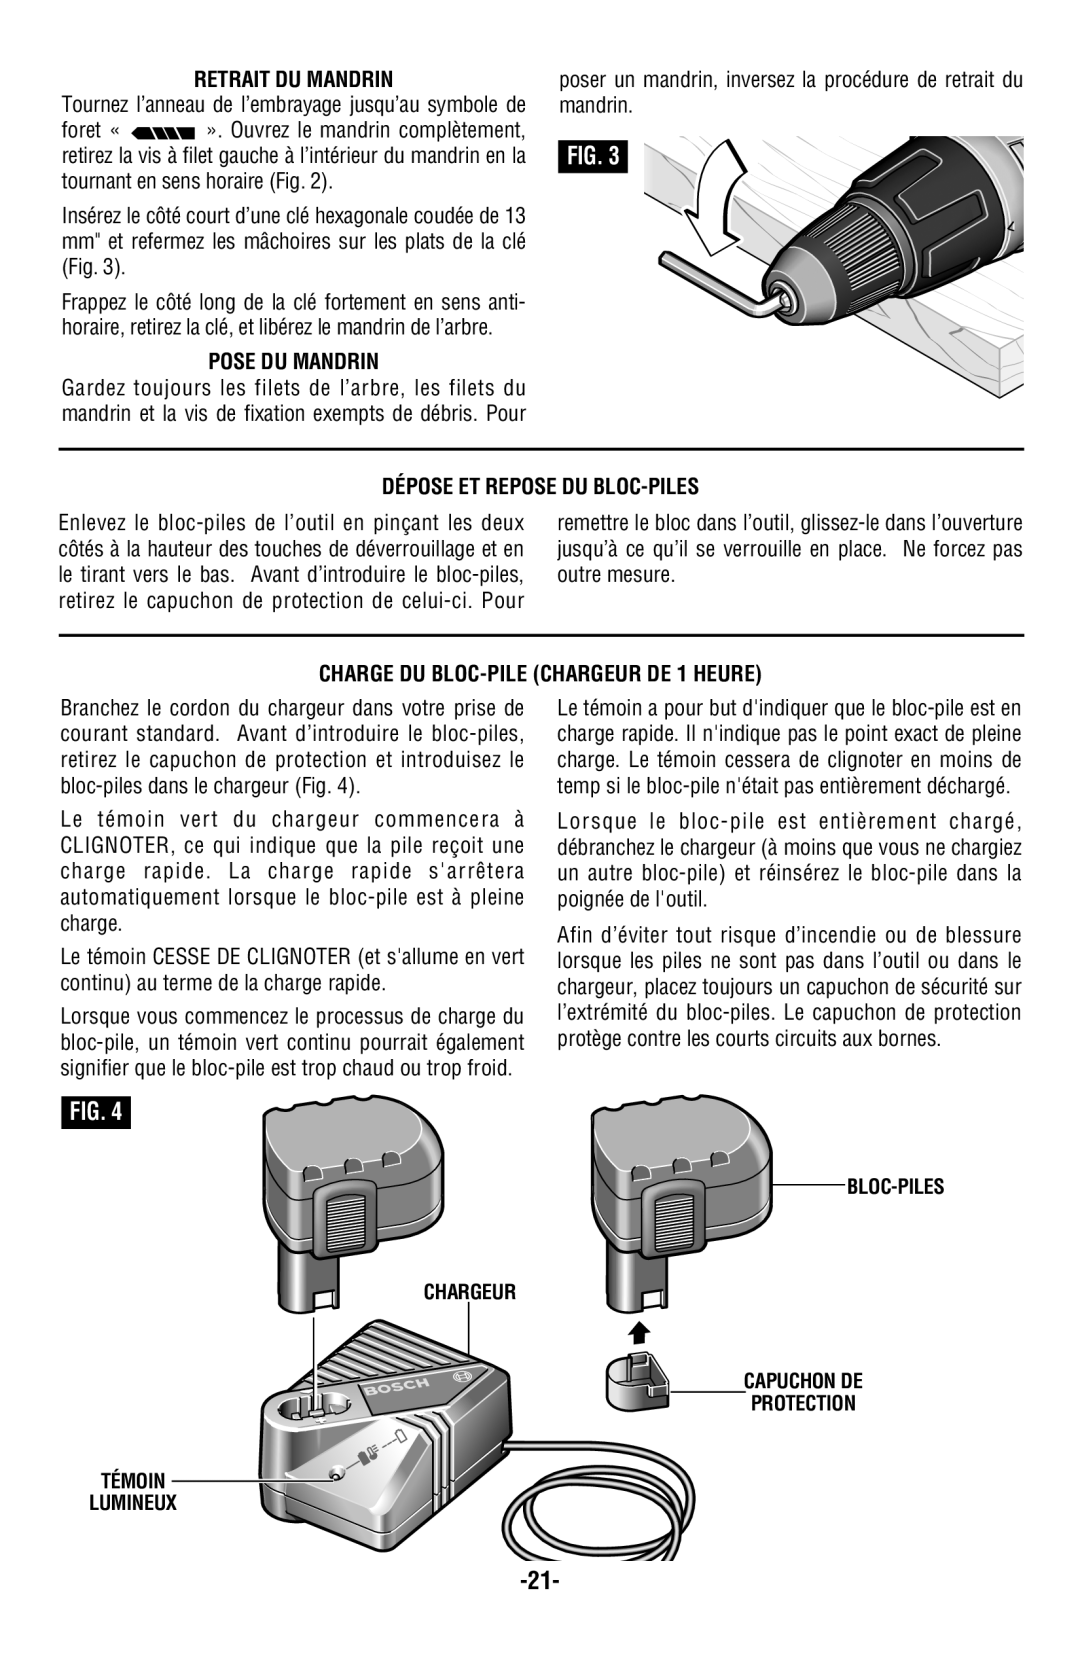 Bosch Power Tools 13614, 13618, 13624 manual Retrait Du Mandrin, Pose Du Mandrin, Dépose Et Repose Du Bloc-Piles 